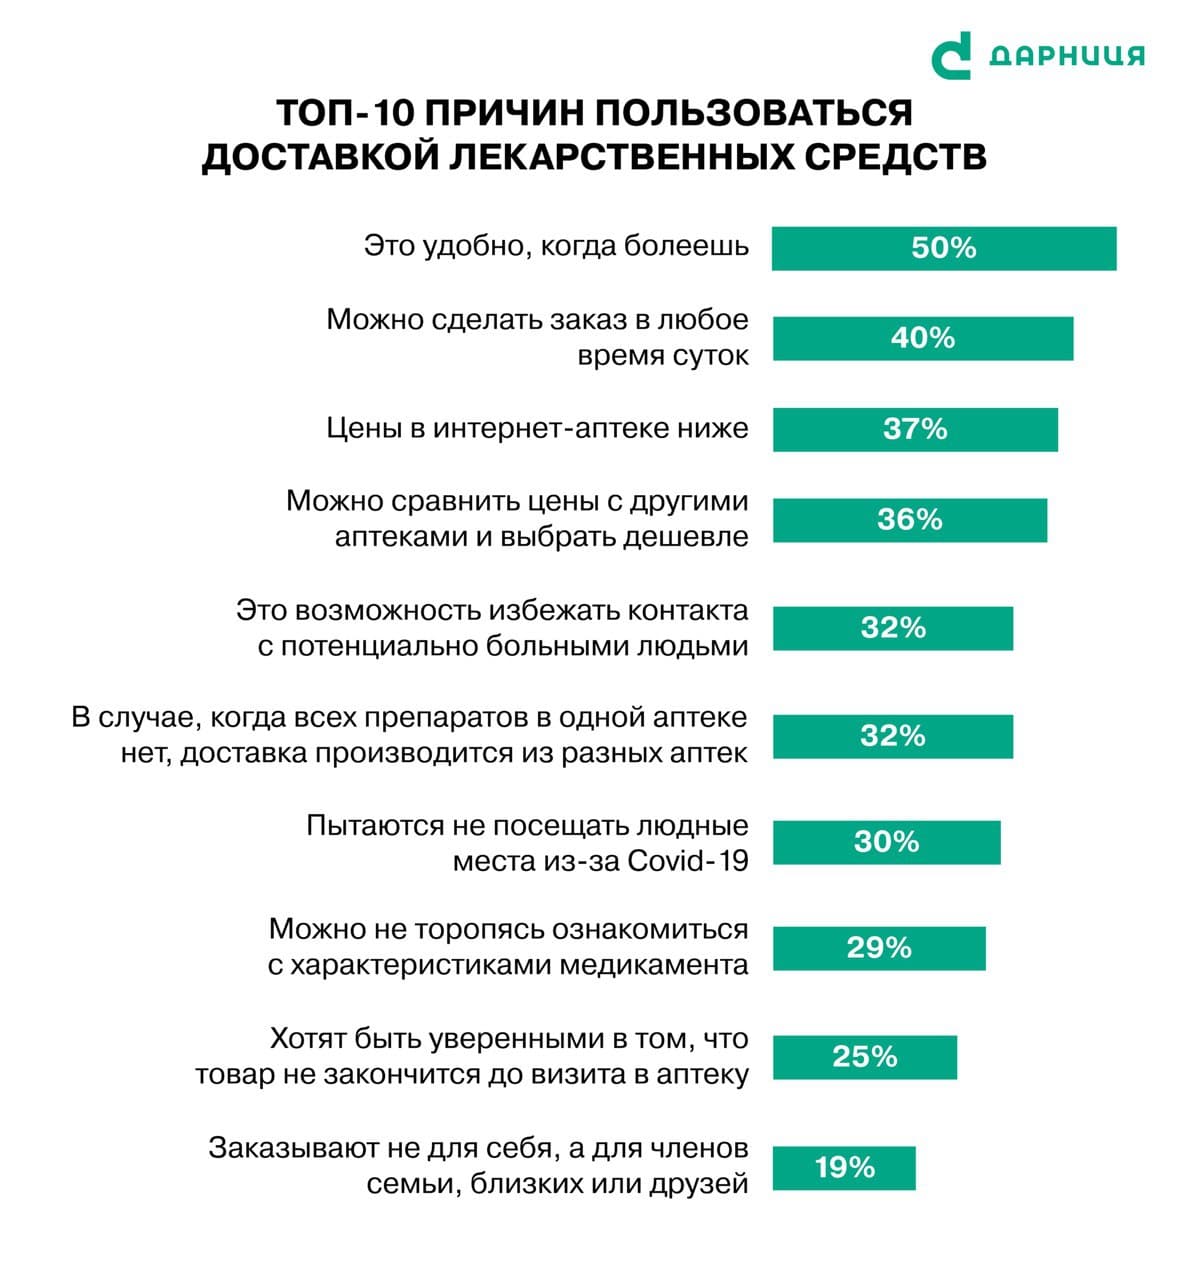 Украинцы гораздо чаще покупают лекарства в аптеках, чем онлайн, - исследование